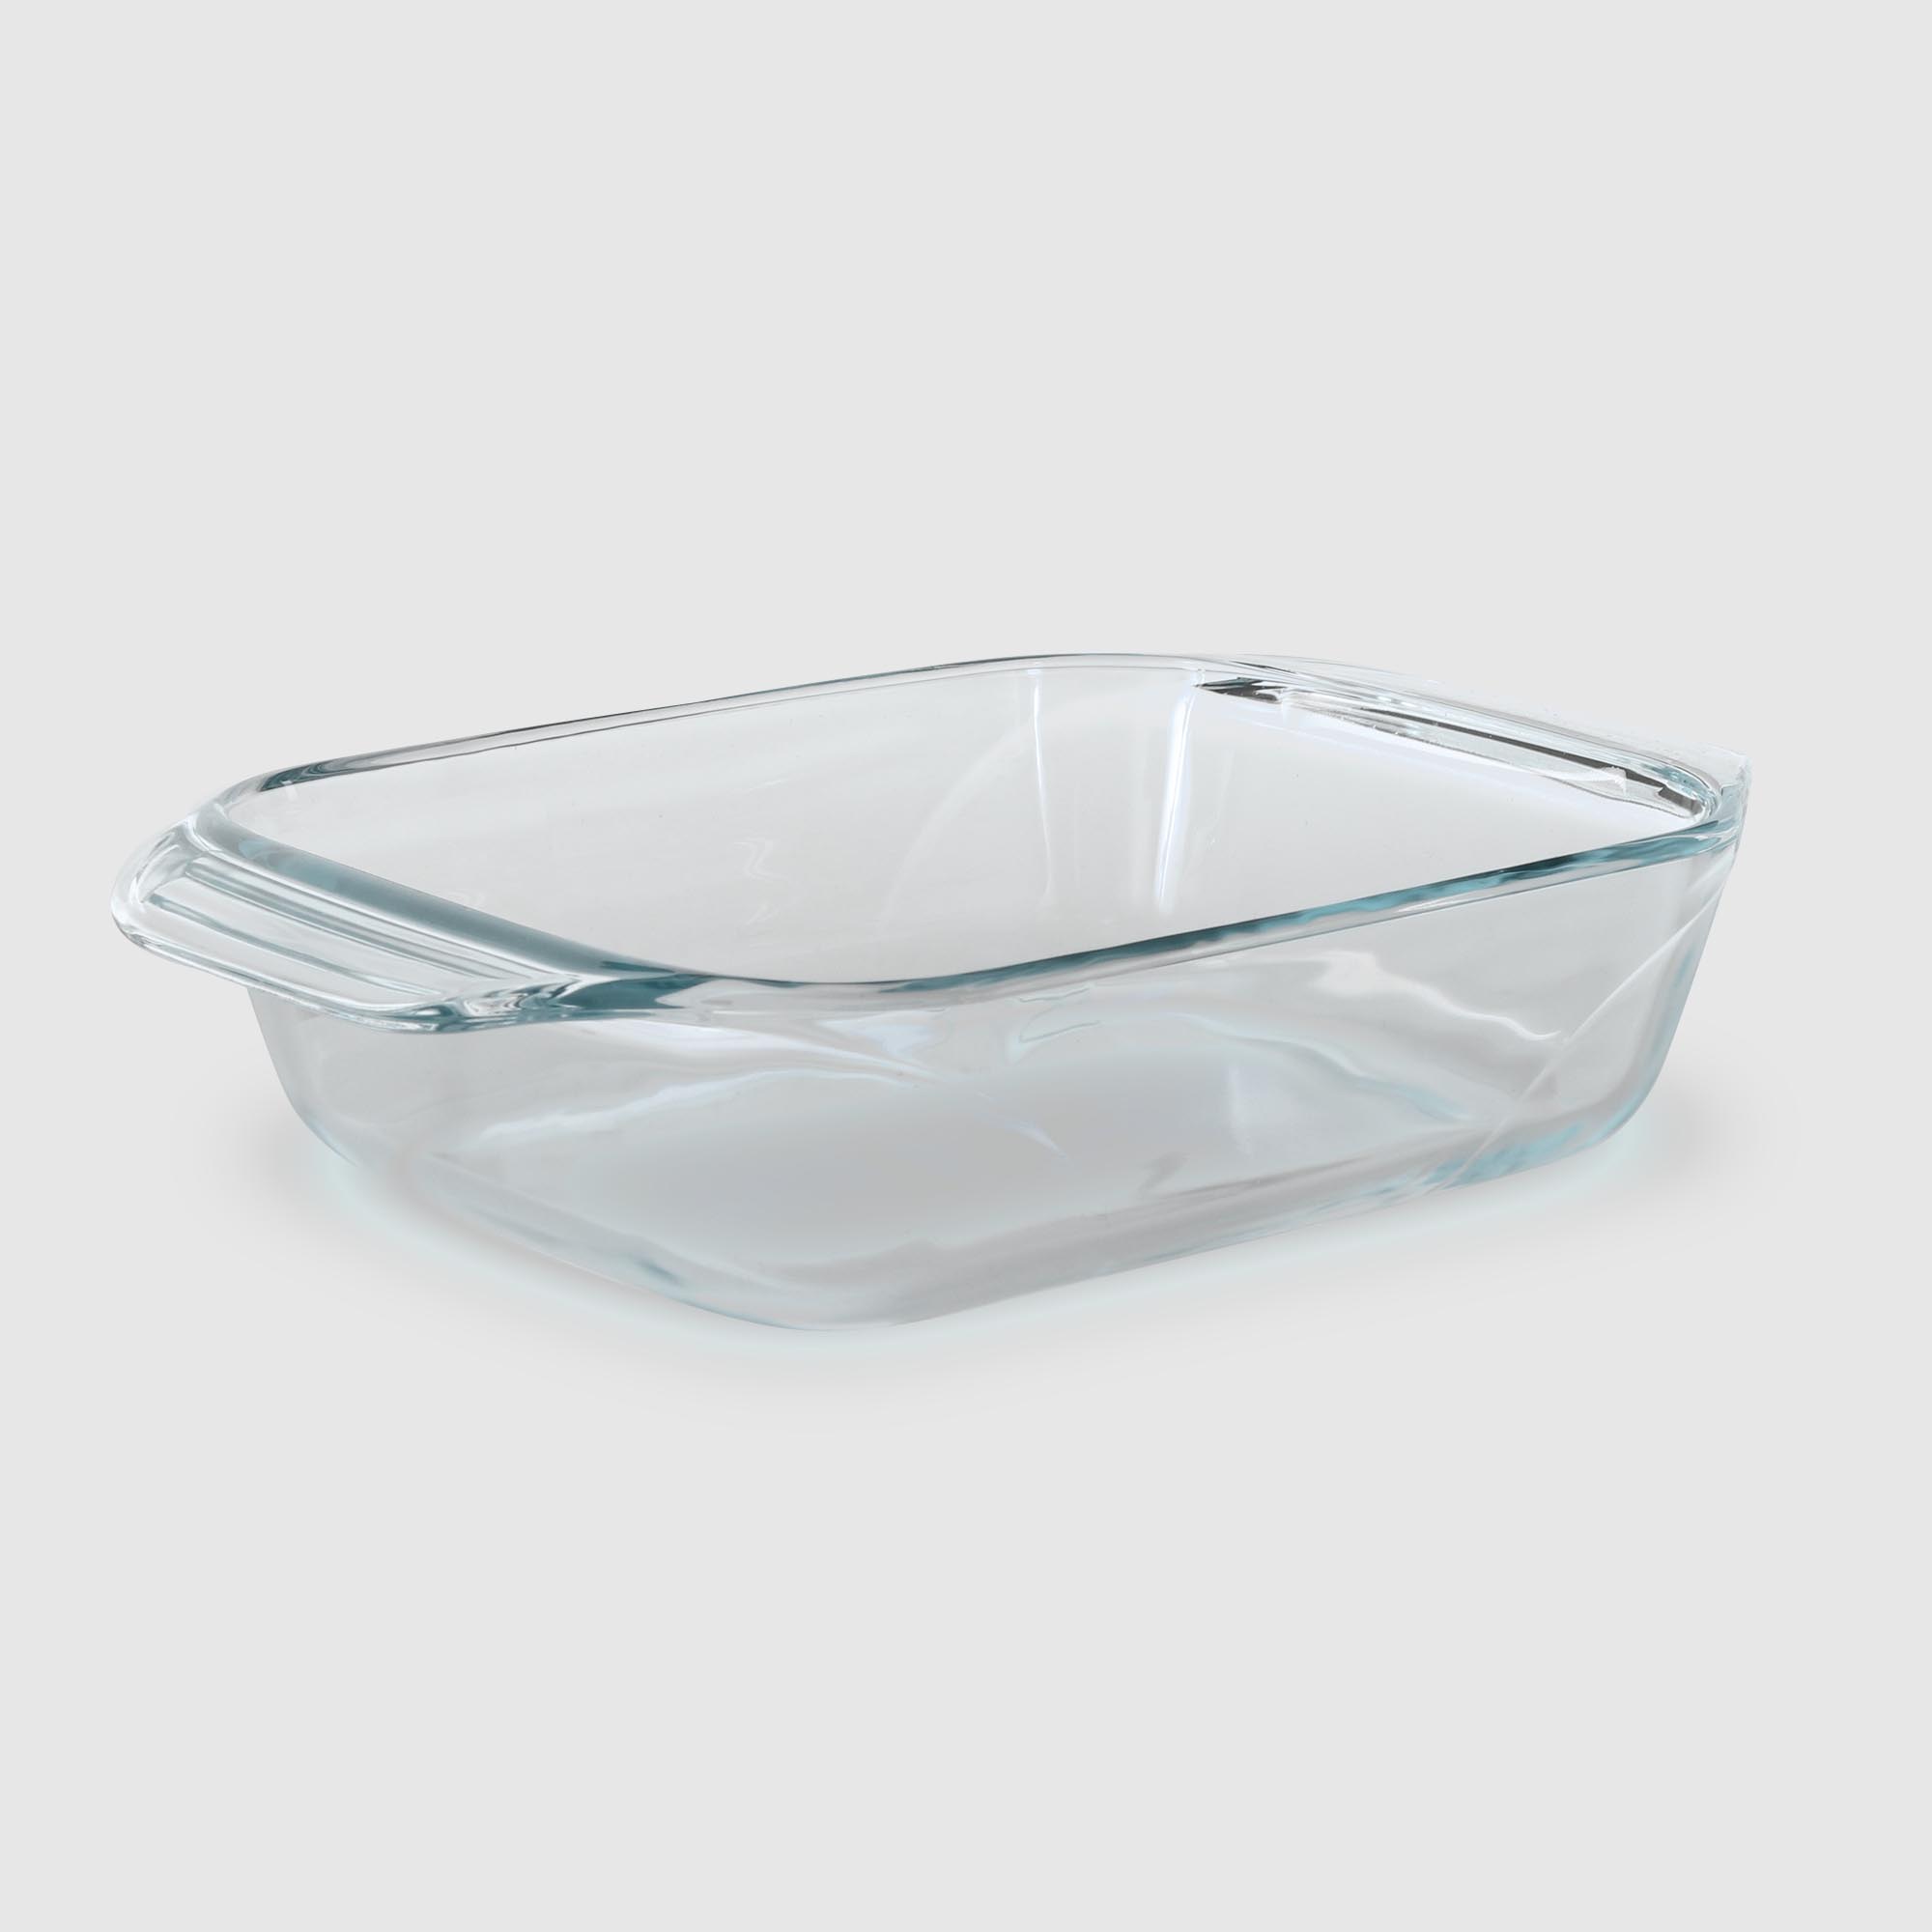 форма для запекания pyrex прямоугольная стекло 27х17 см Форма для запекания Pyrex прямоугольная стекло 27х17 см